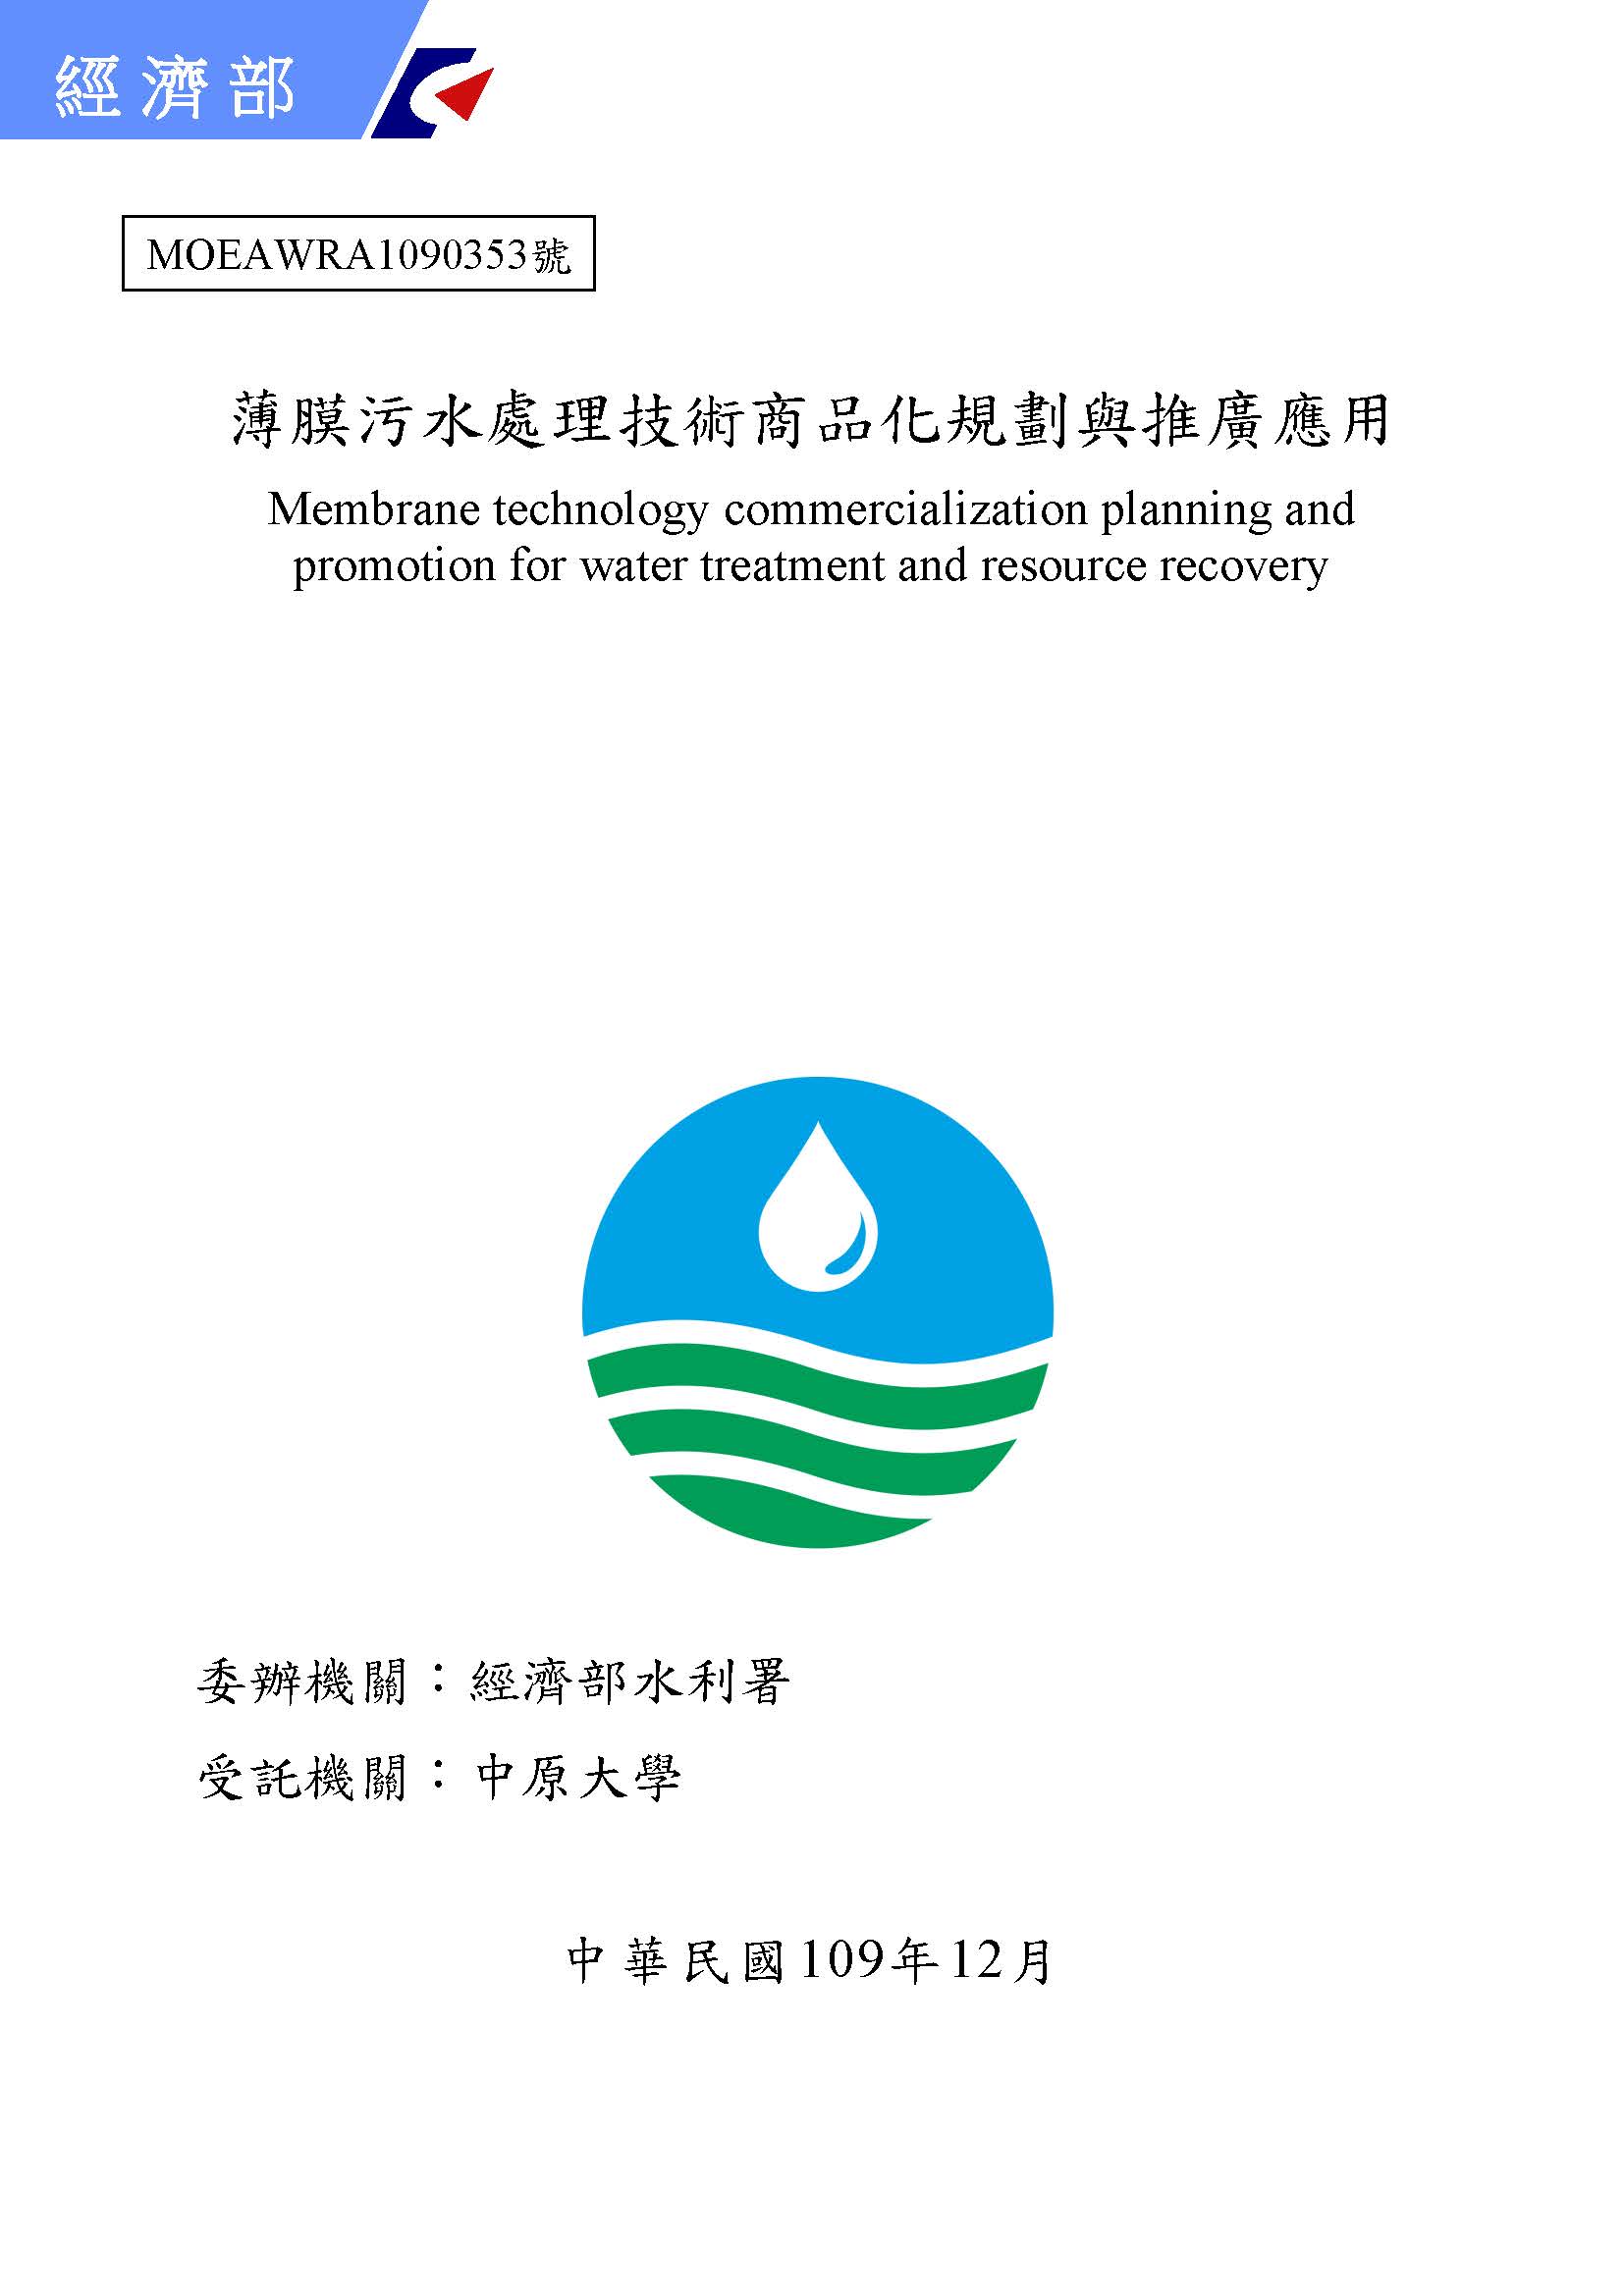 薄膜污水處理技術商品化規劃與推廣應用